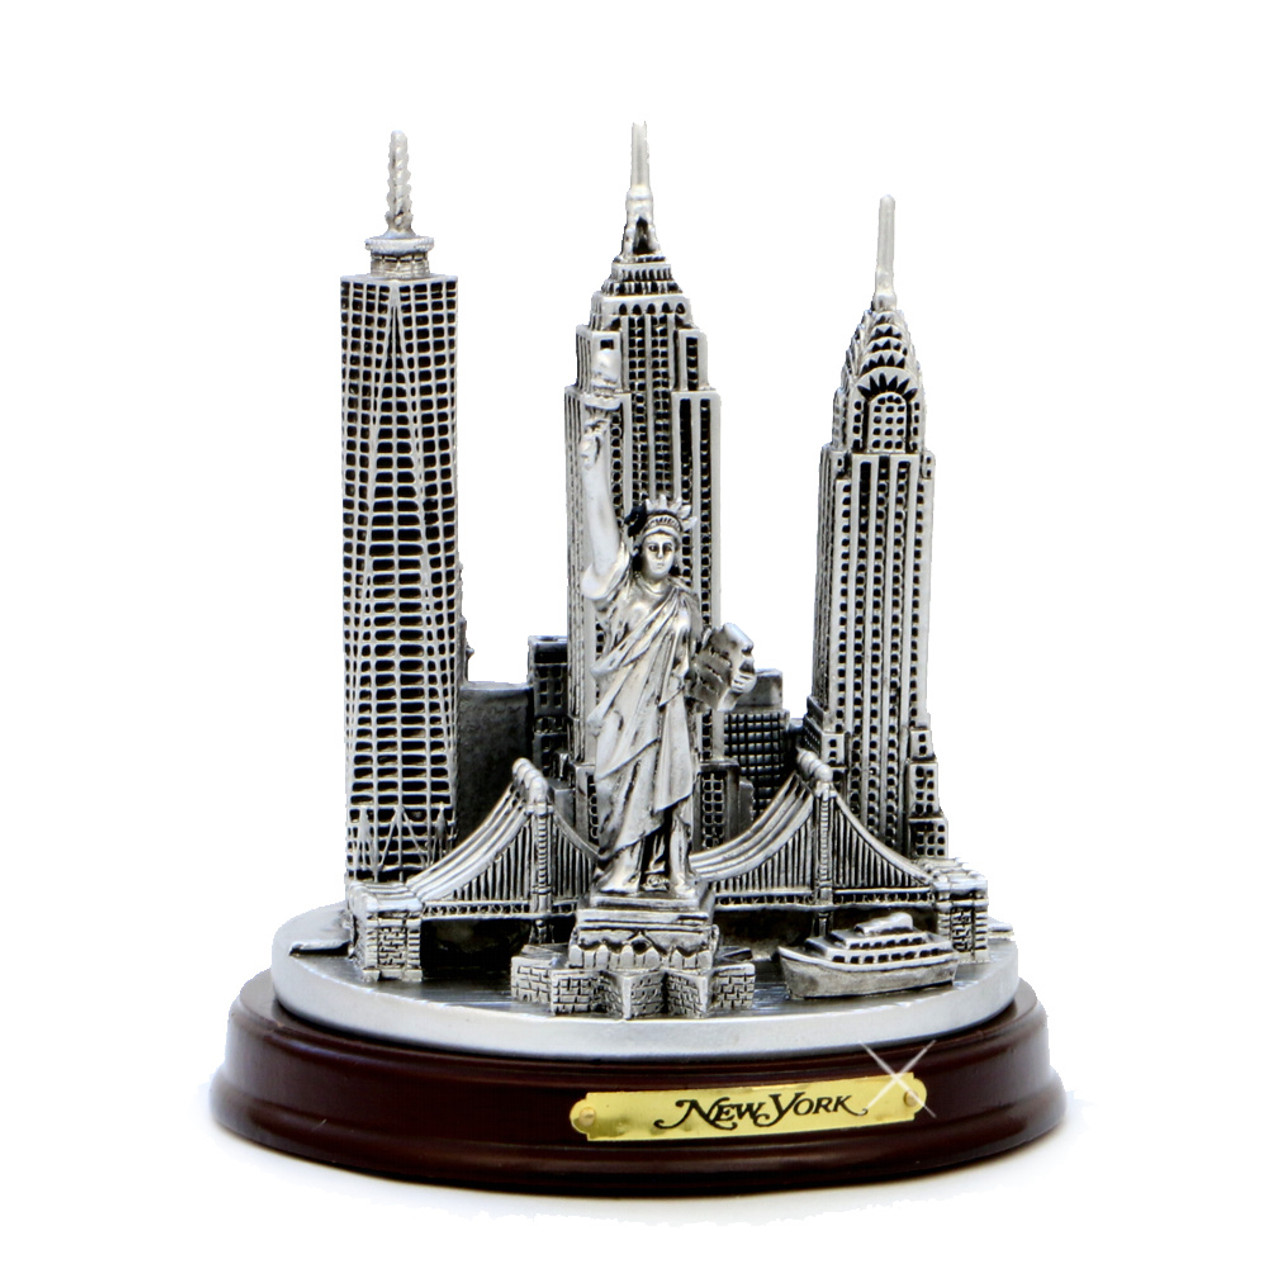 4.5" Round New York City Model Replica Souvenirs